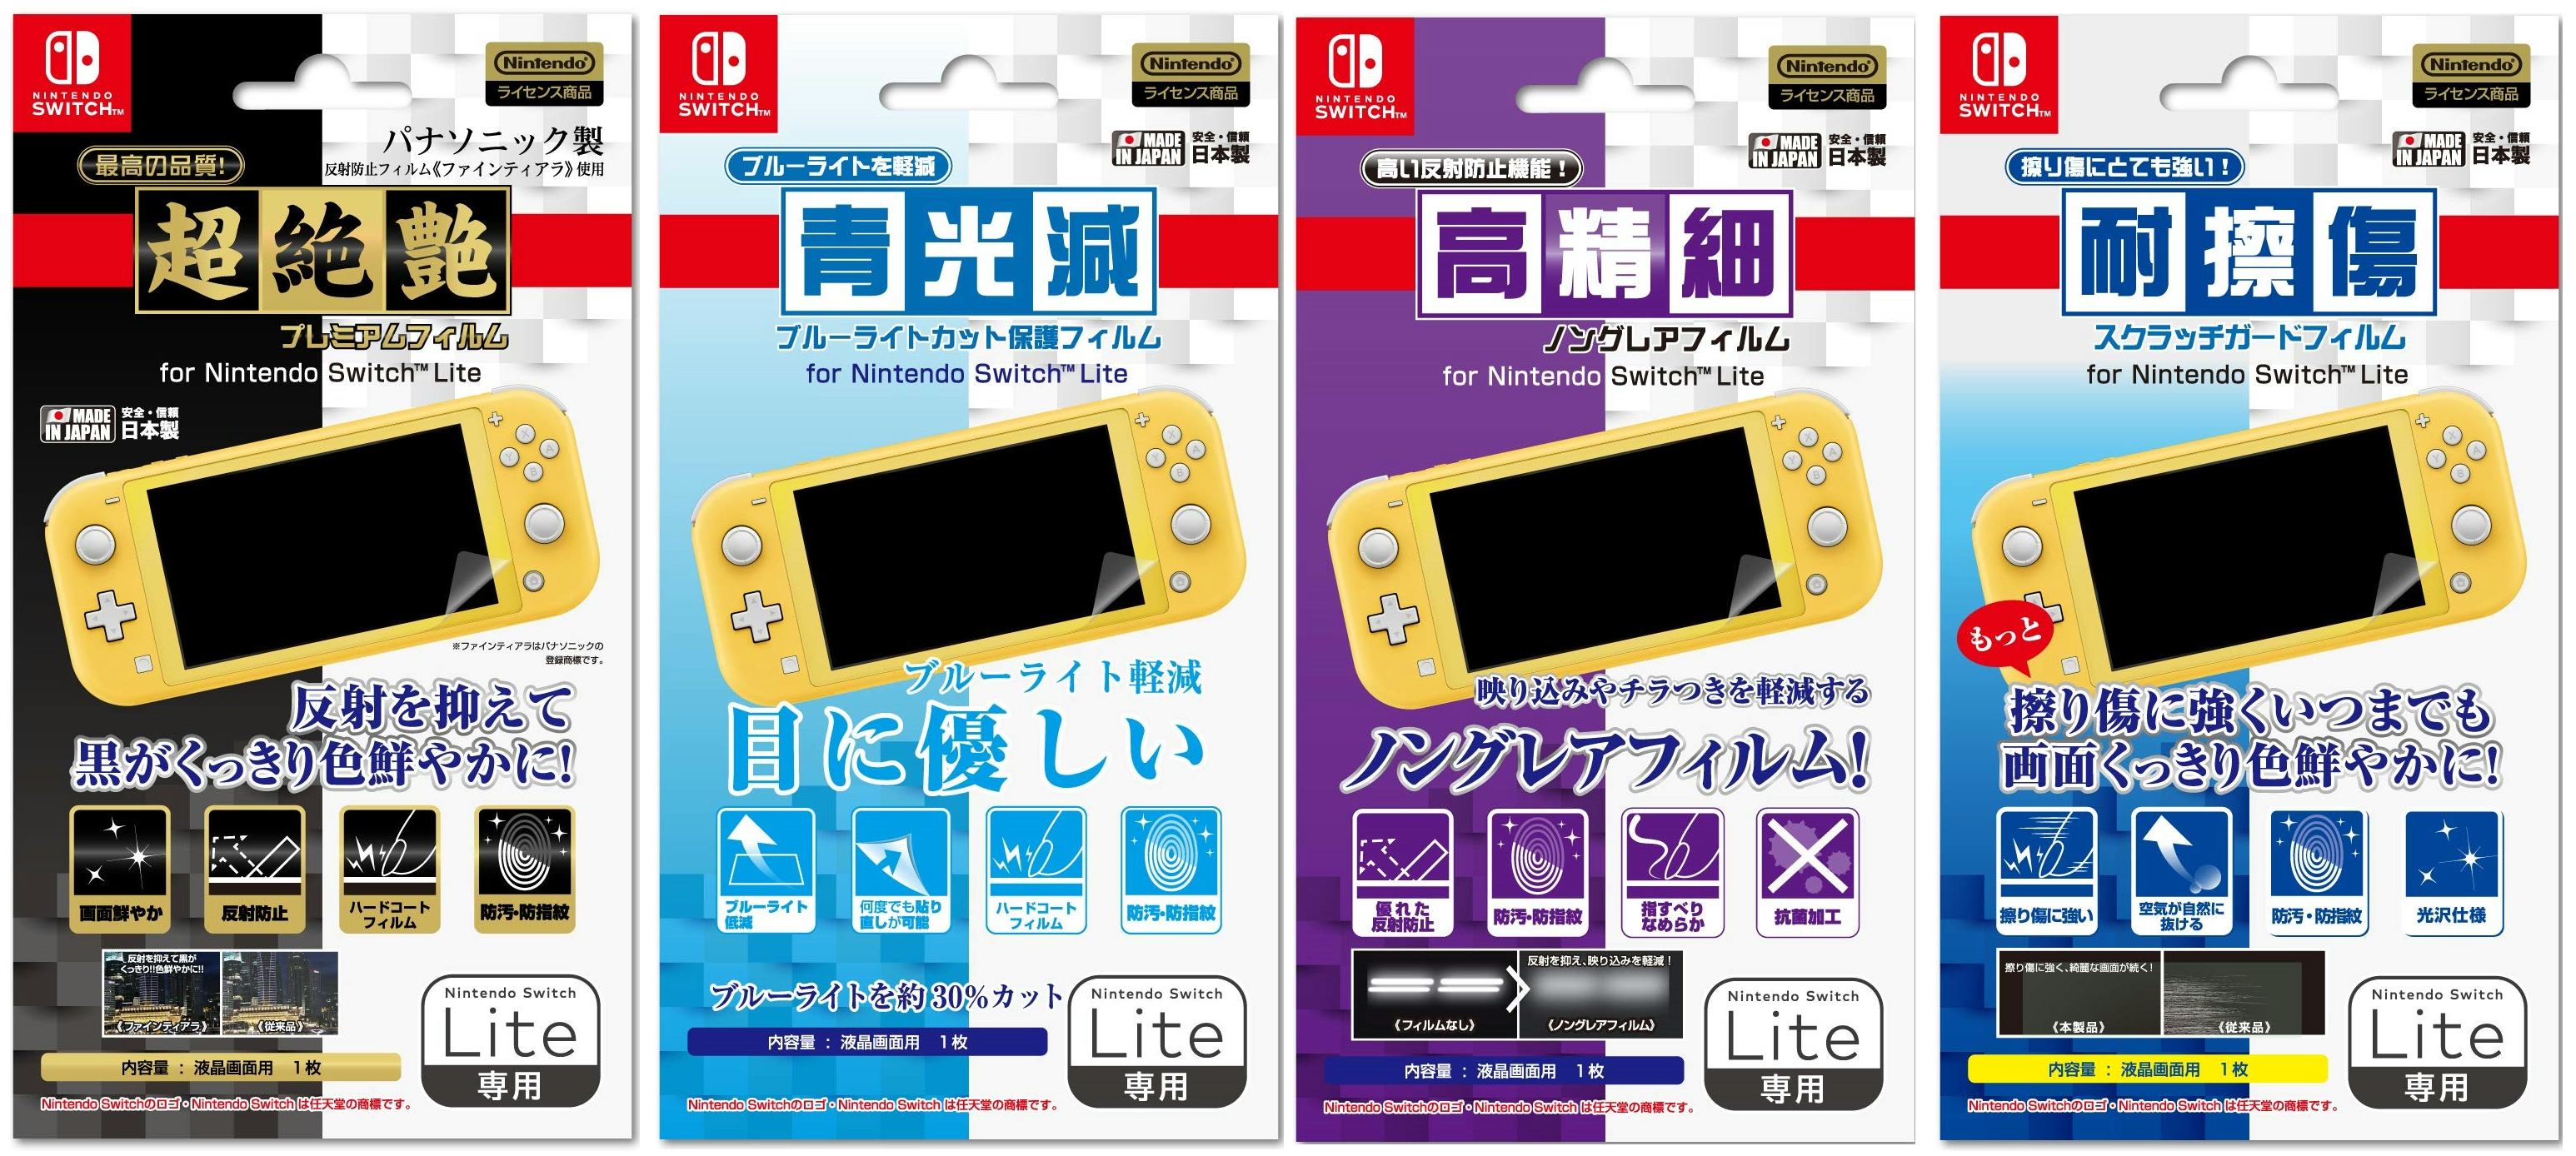 アイレックスから「Nintendo Switch Lite」用のアクセサリーが2019年9月20日に発売決定！ | Nintendo Switch  情報ブログ